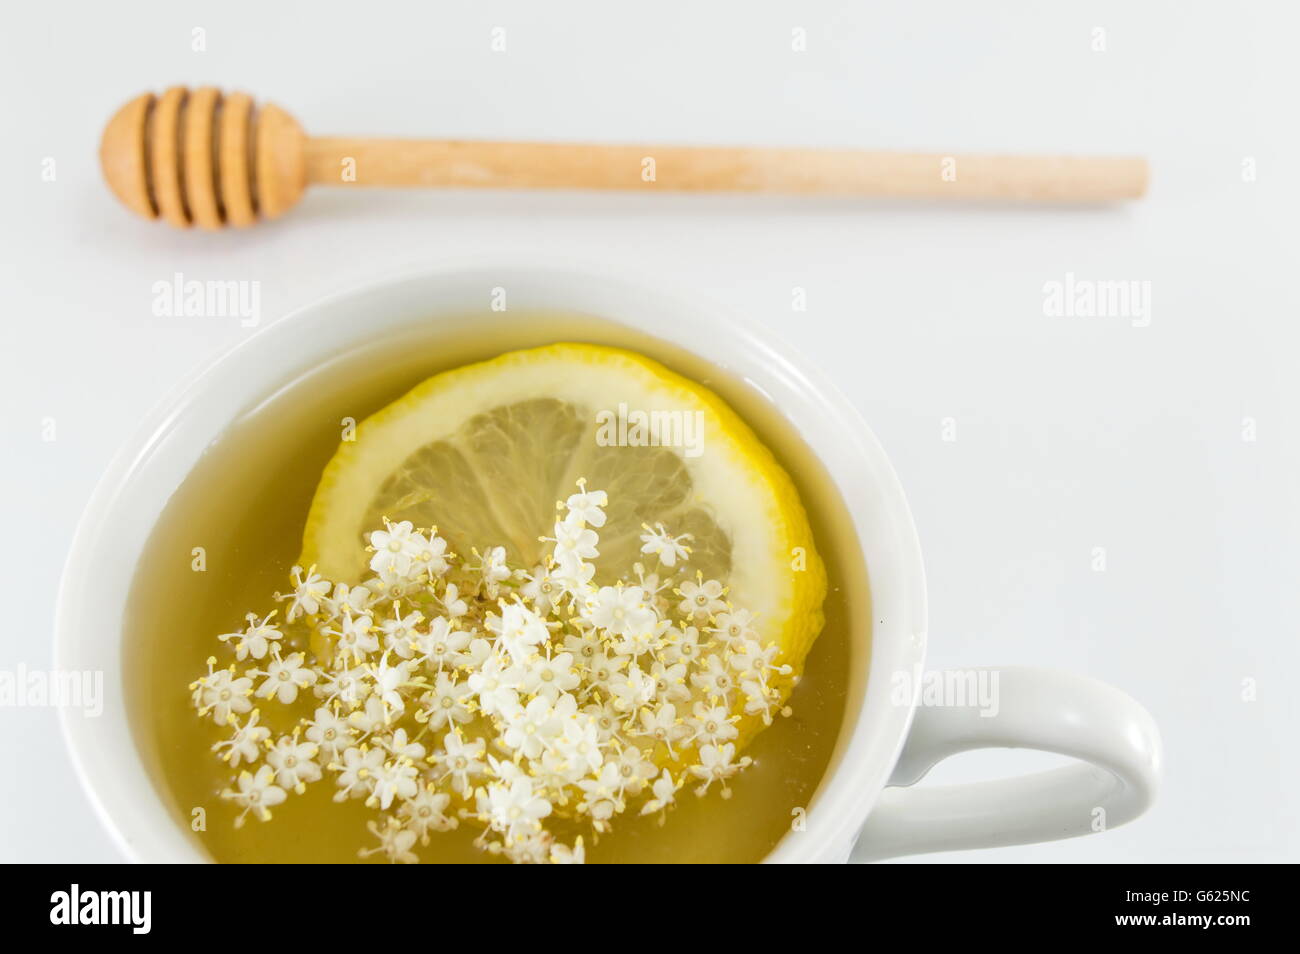 Limone e cucchiaio immagini e fotografie stock ad alta risoluzione - Alamy